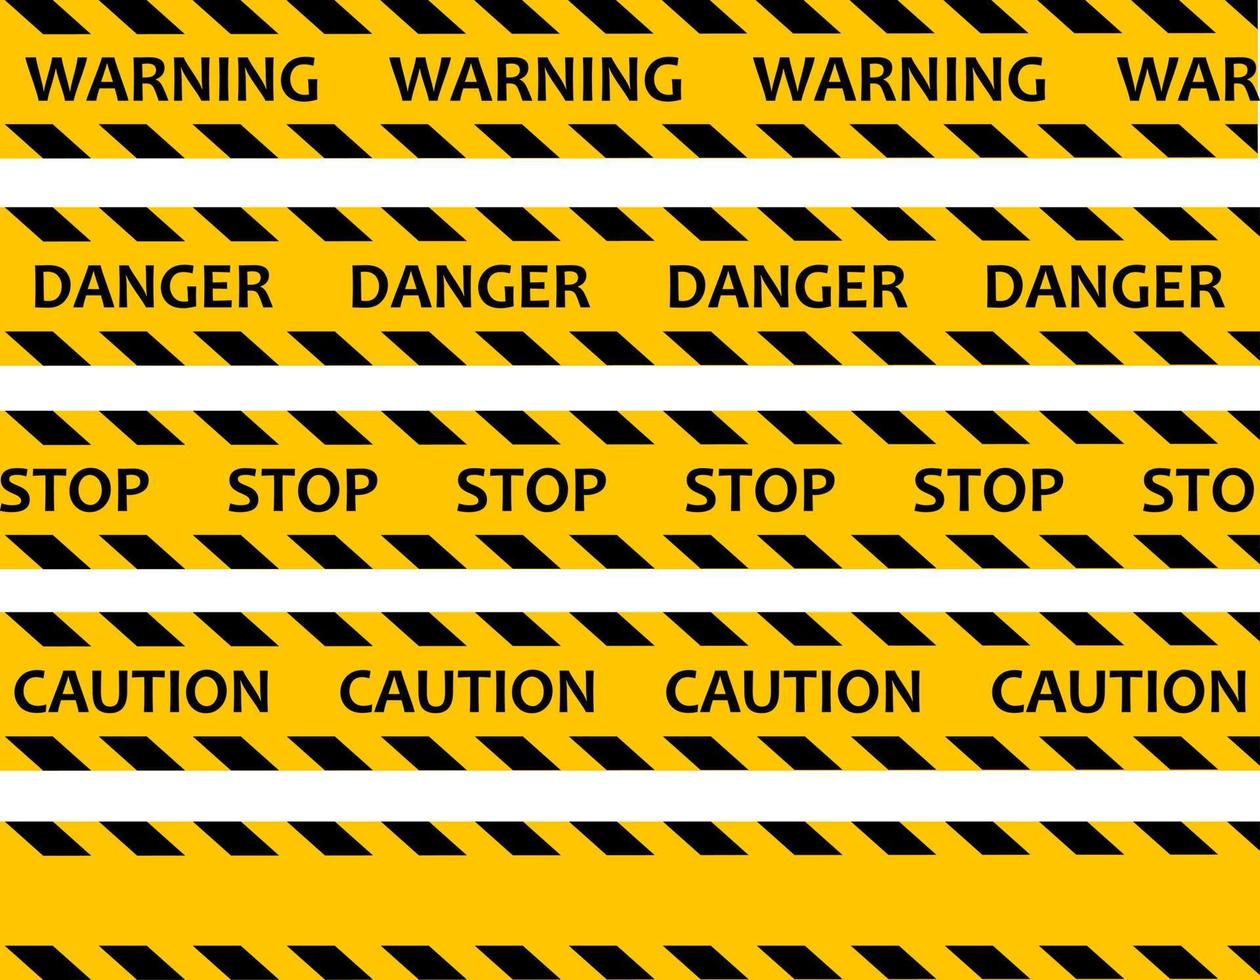 no cruzar. mayor peligro. la cinta es amarilla protectora con negro. parada. precaución y advertencia. vector